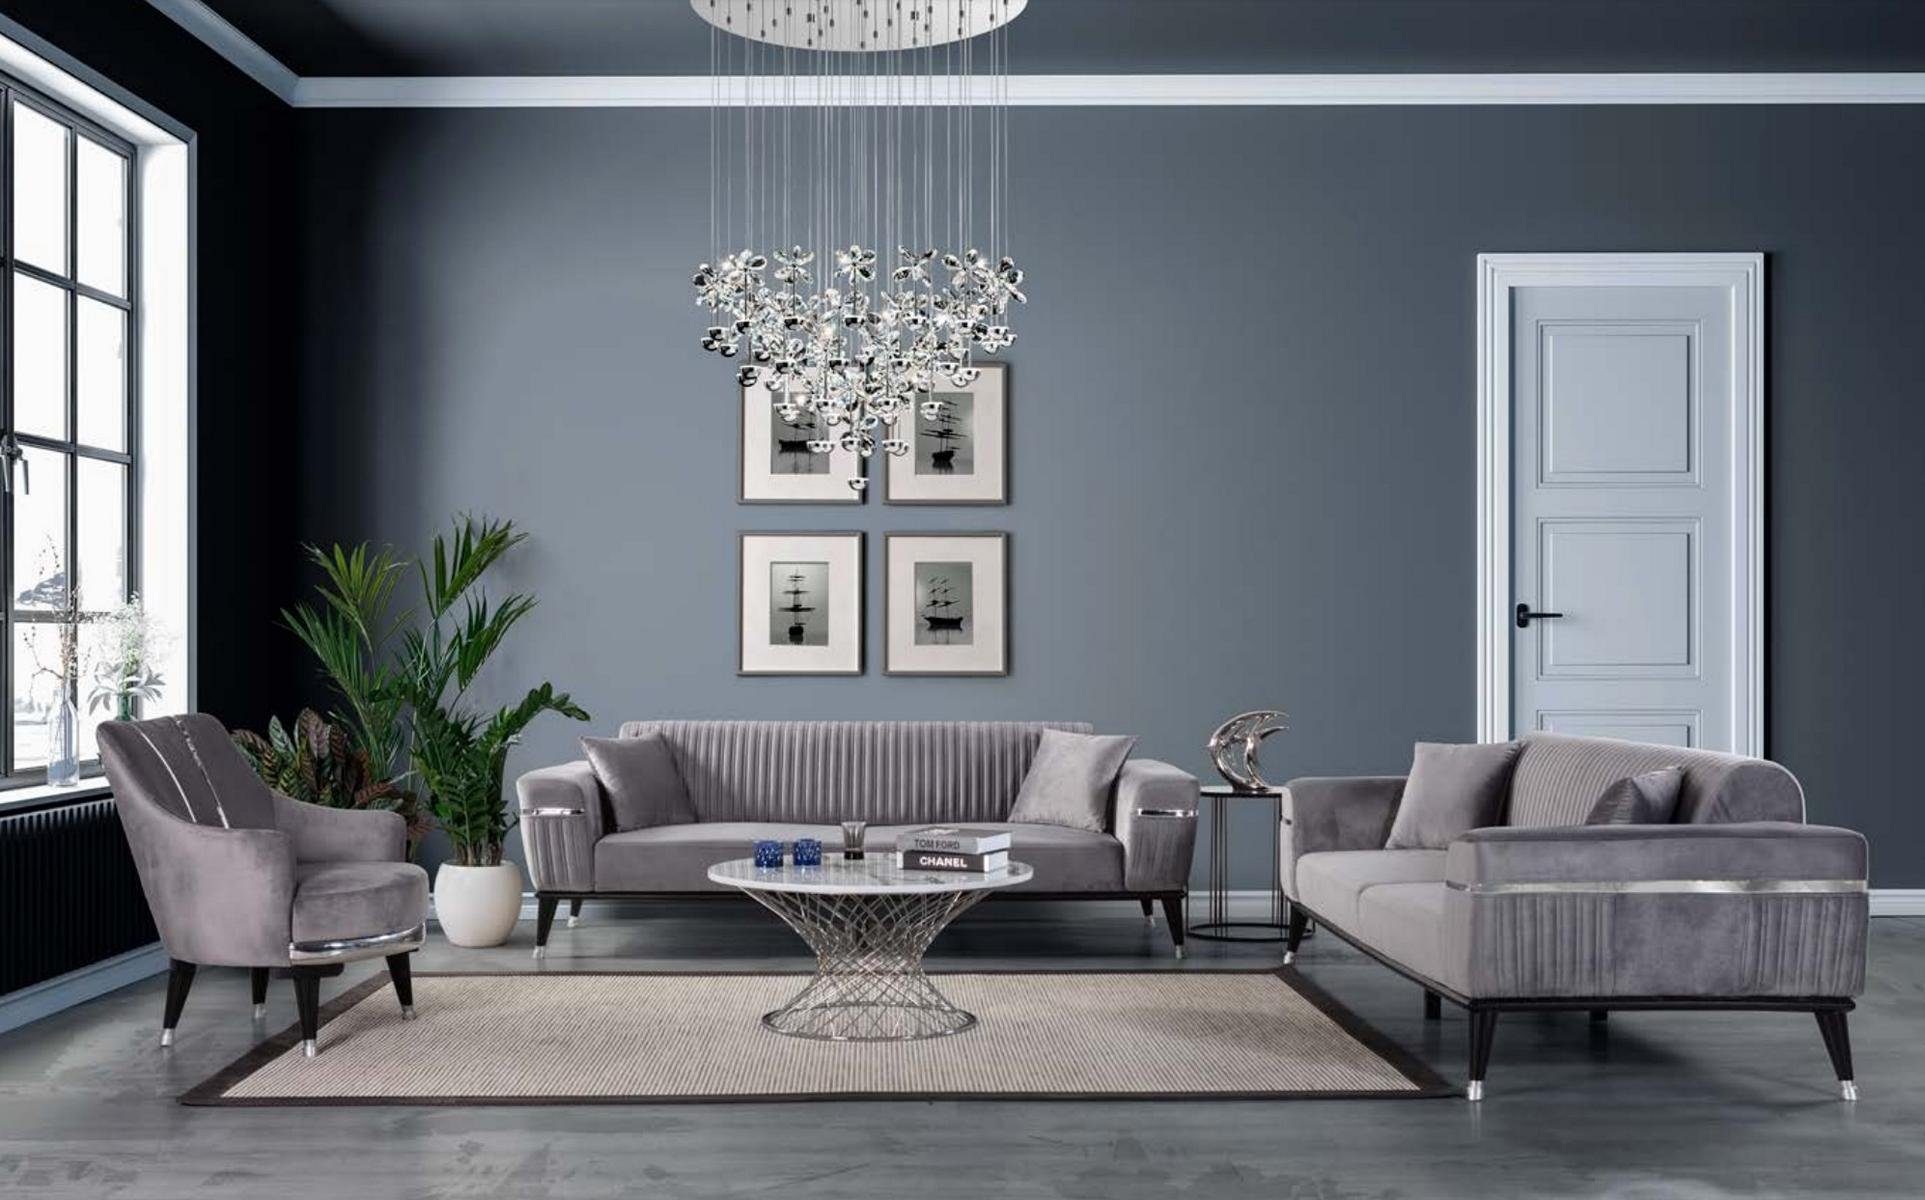 Couchen JVmoebel Wohnzimmer Graue Möbel Europe Grau, Couch Luxus Sofa Sofa in Made